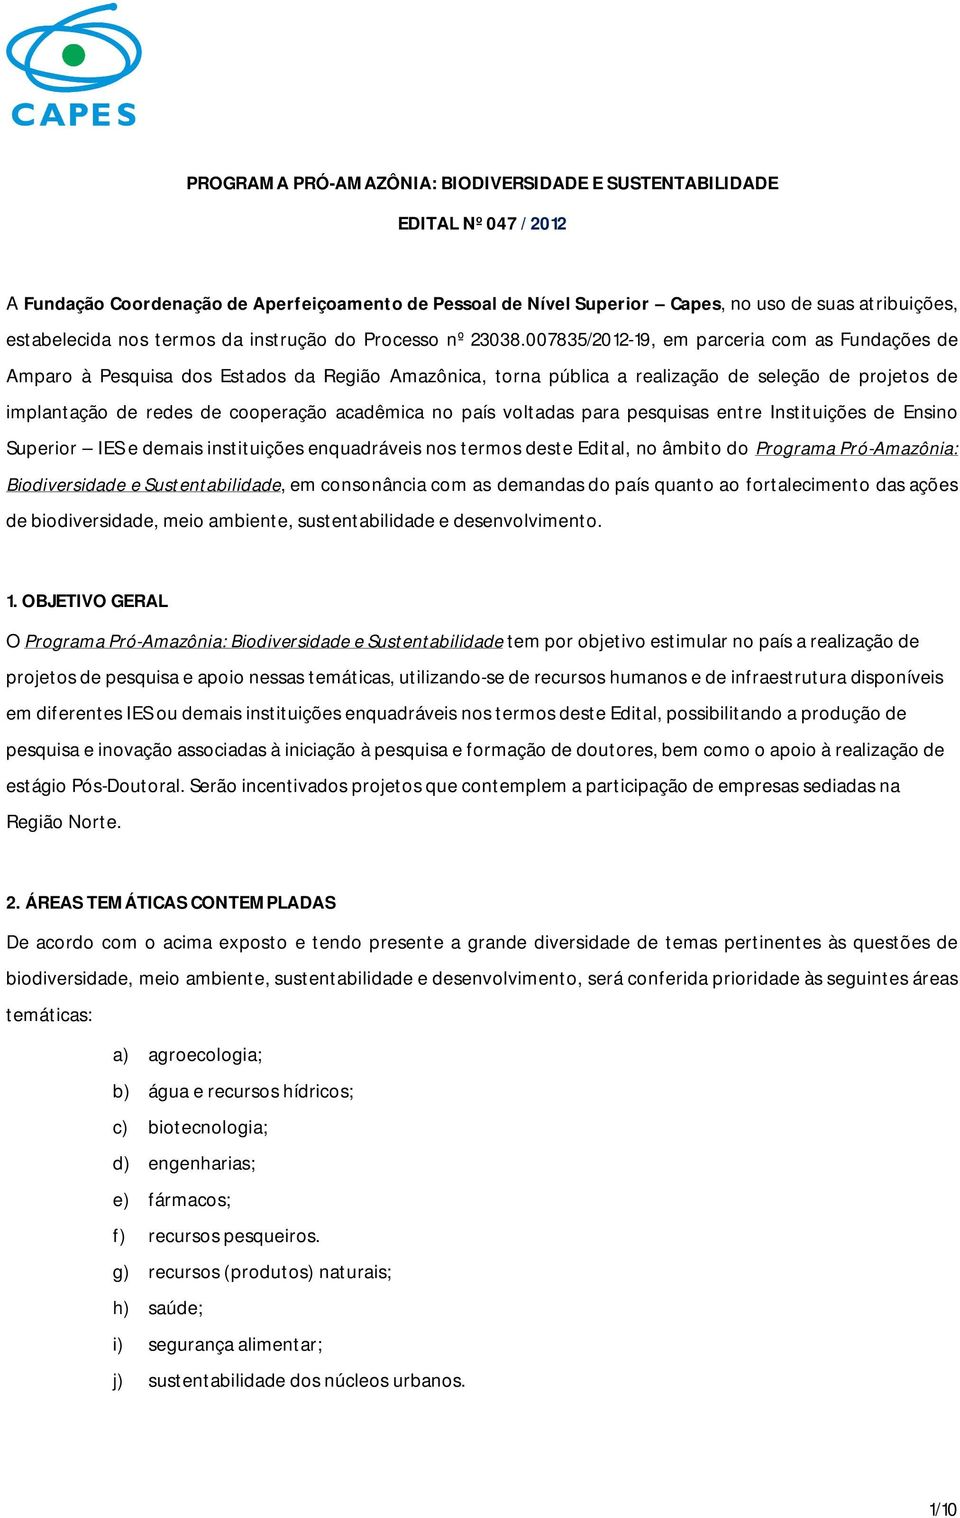 007835/2012-19, em parceria com as Fundações de Amparo à Pesquisa dos Estados da Região Amazônica, torna pública a realização de seleção de projetos de implantação de redes de cooperação acadêmica no